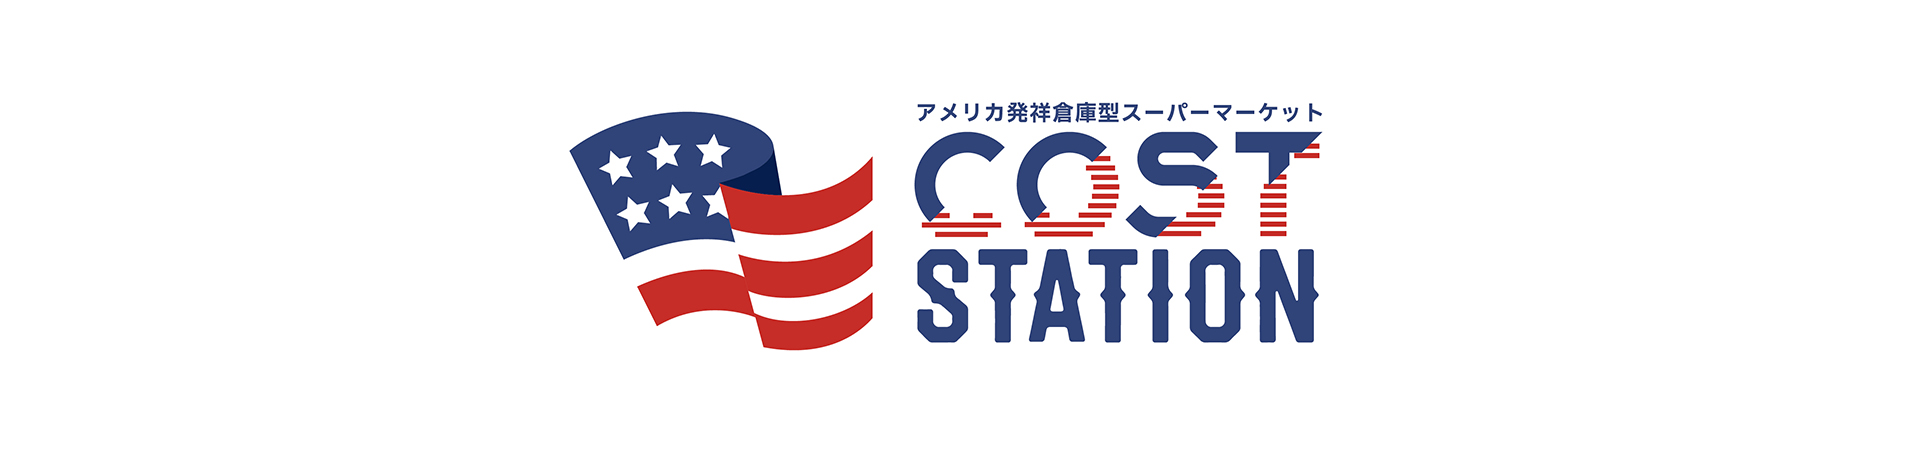 コストコ商品の再販店『コストステーション』西区庄内通に4月19日（金）10時オープン